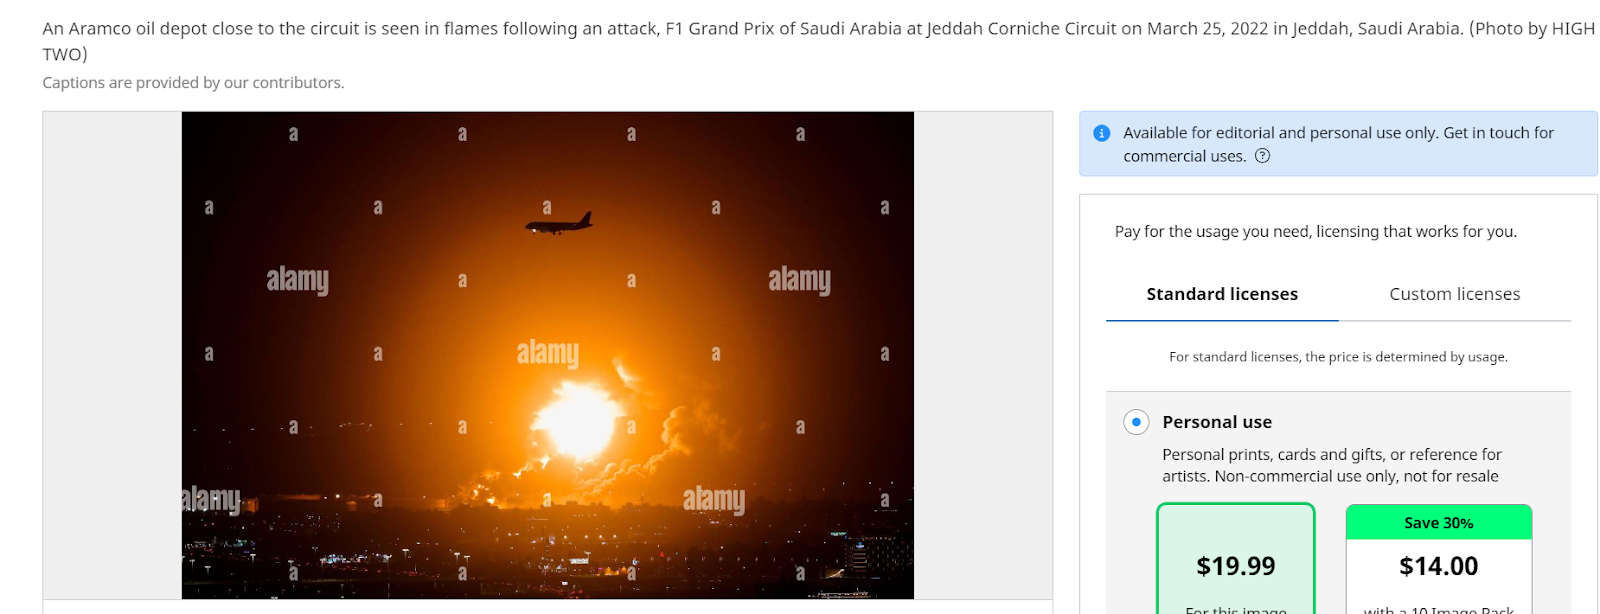 لقطة شاشة من صورة تُظهر حريقًا اندلع في السعودية في مارس 2022